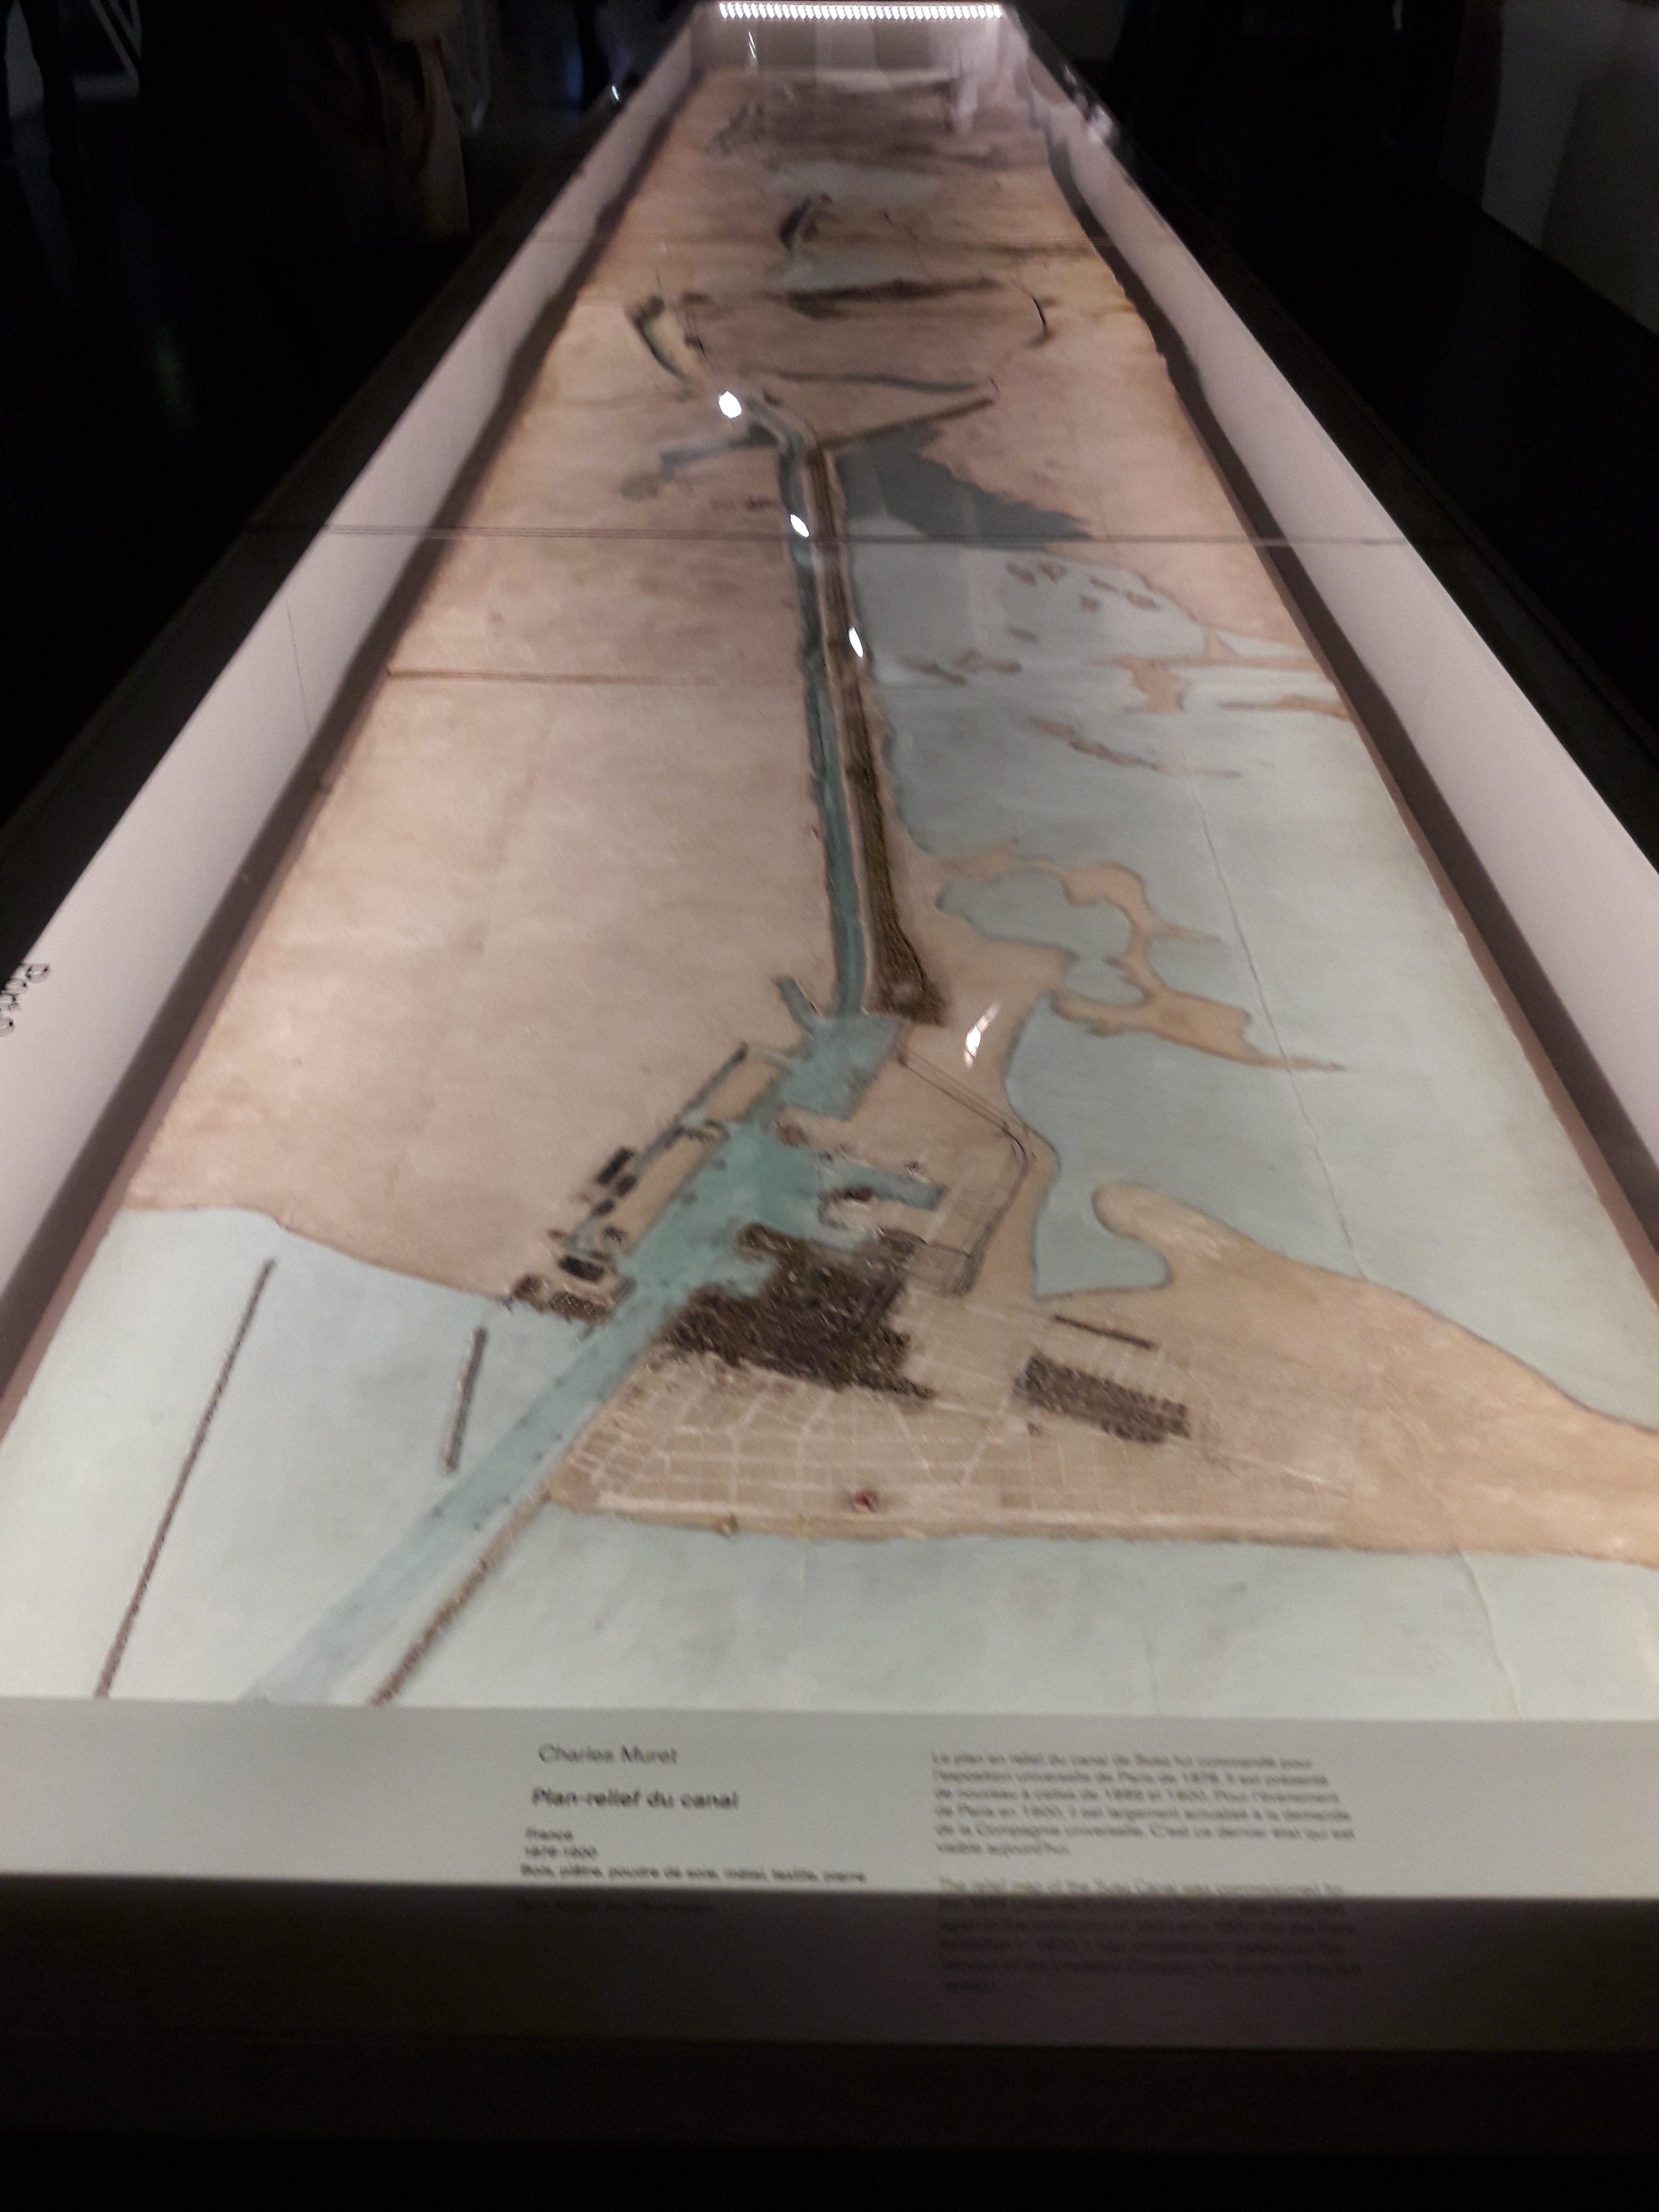 (2) Déambulation automnale : Découverte de l’exposition « Marseille & L’épopée du canal de Suez » au musée d’histoire de Marseille